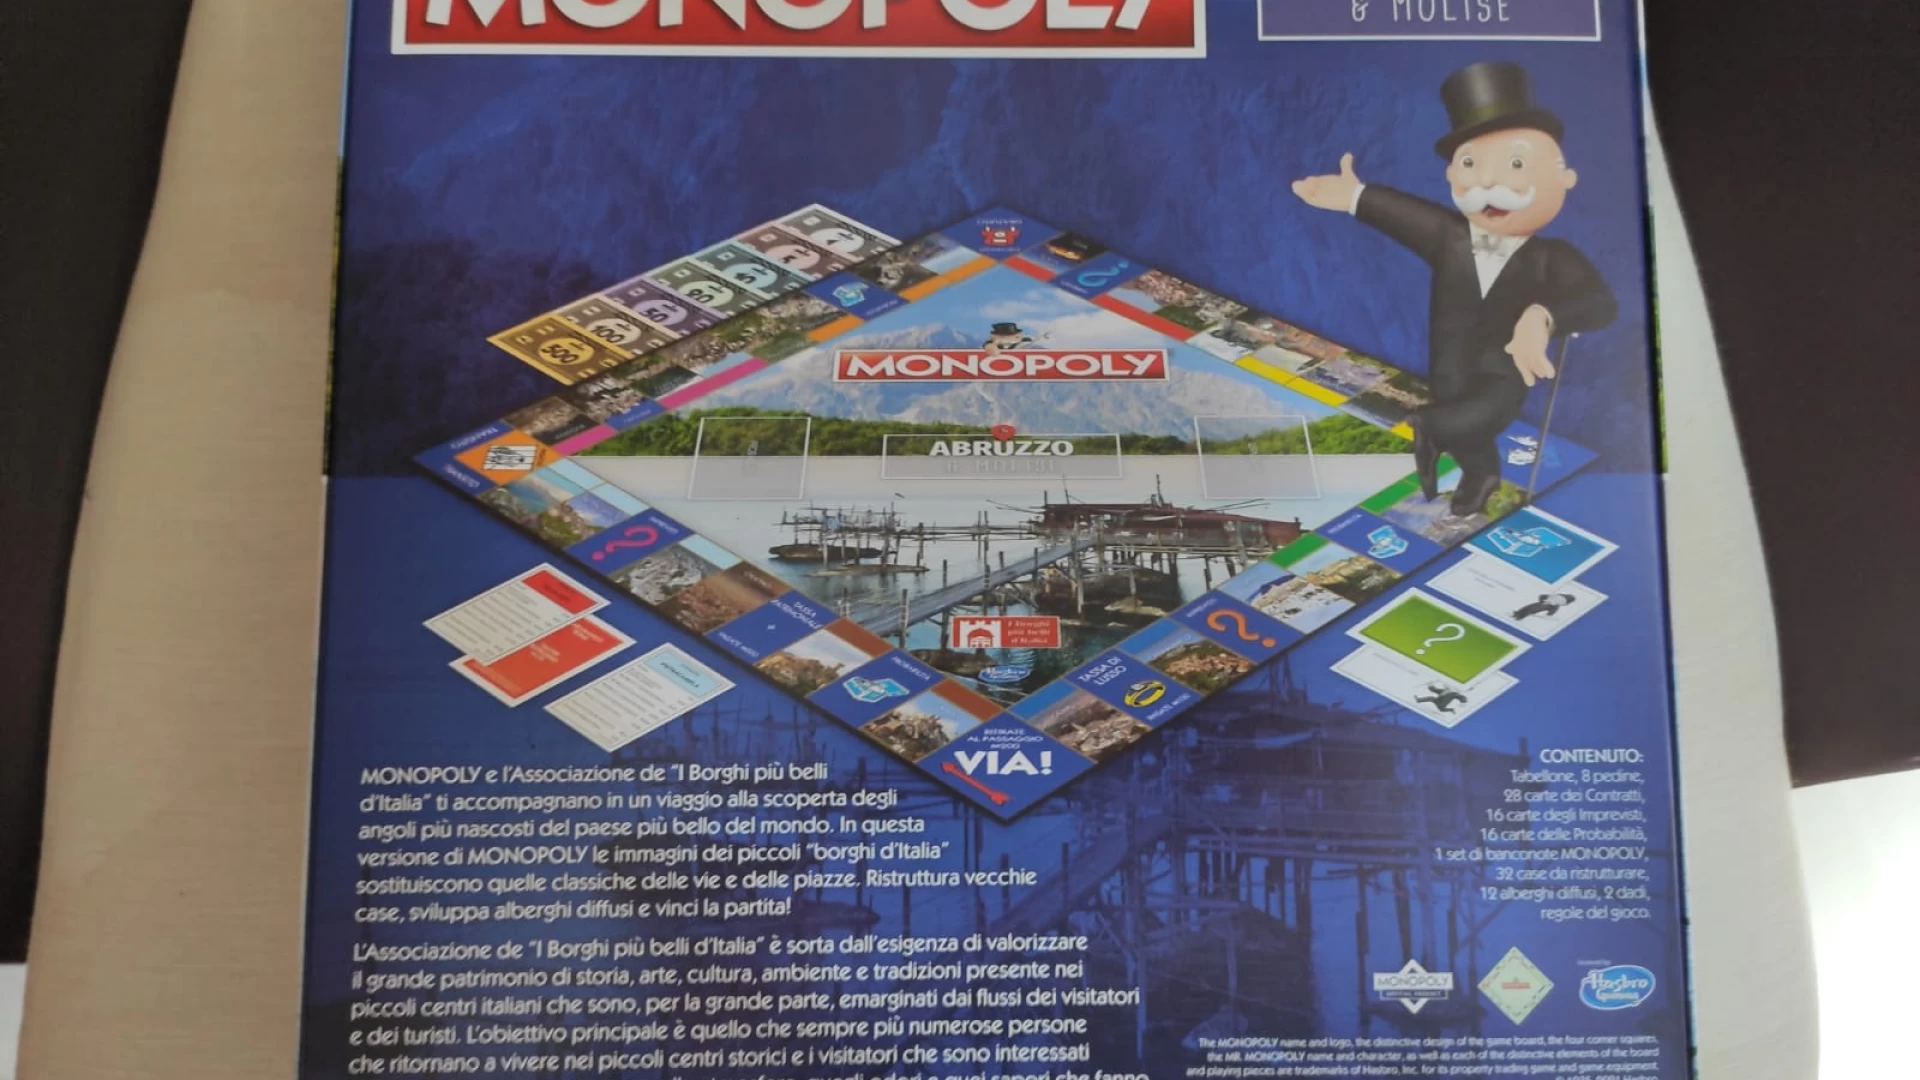 Monopoly Abruzzo-Molise. Grande successo per il gioco da tavola di compravendita più famoso al mondo. In molti appassionati si sono accaparrati la confezione edizione limitata.